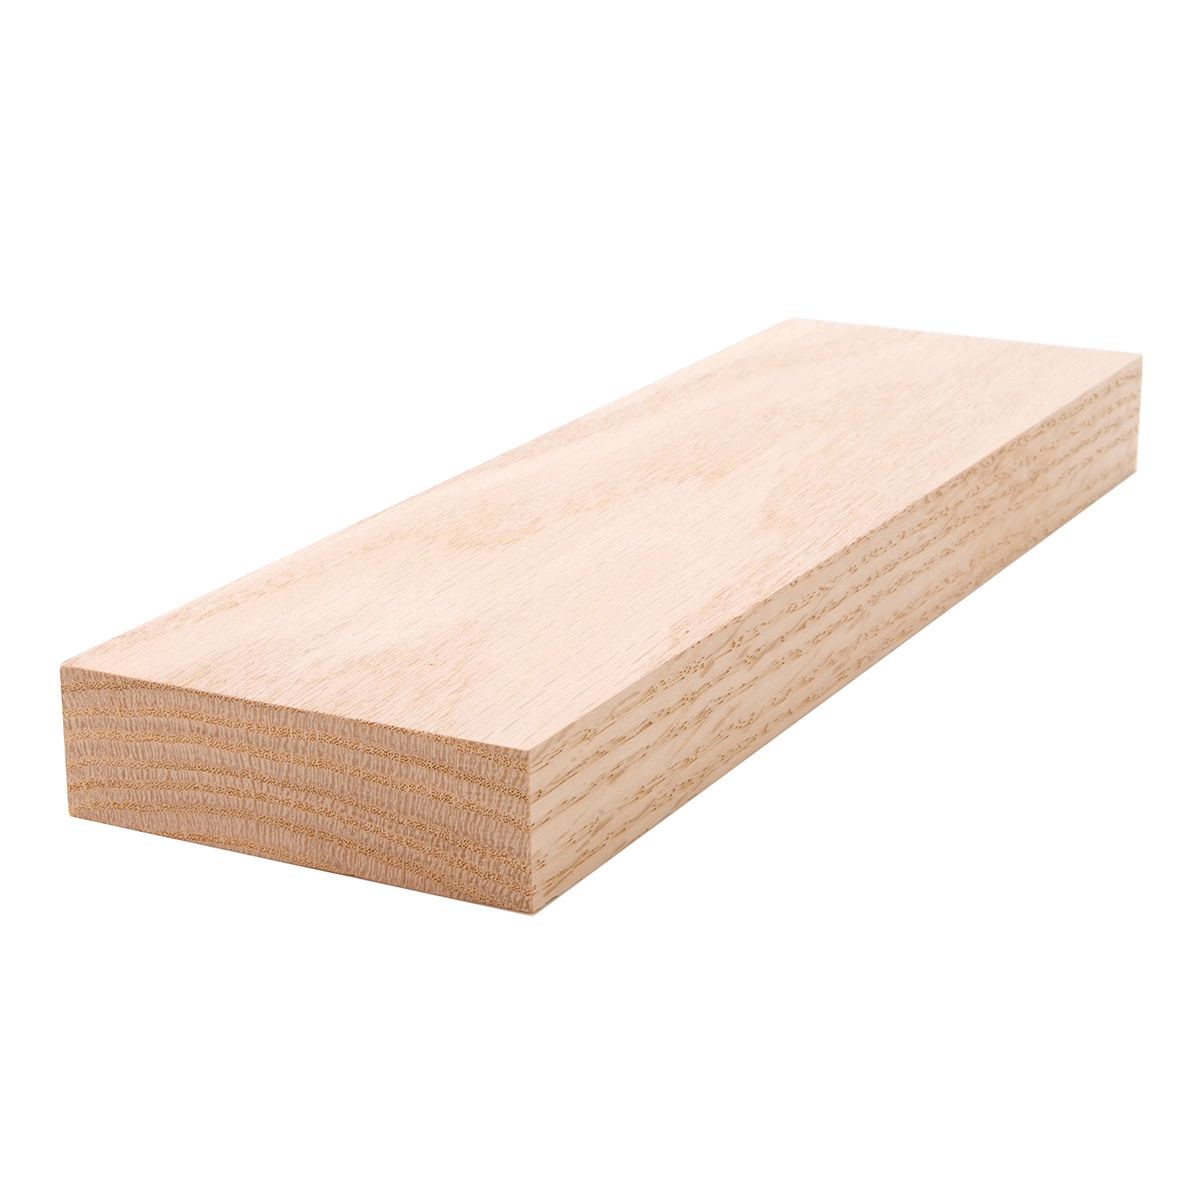 5/4x4 (1" x 31/2") Red Oak S4S Lumber, Boards, & Flat